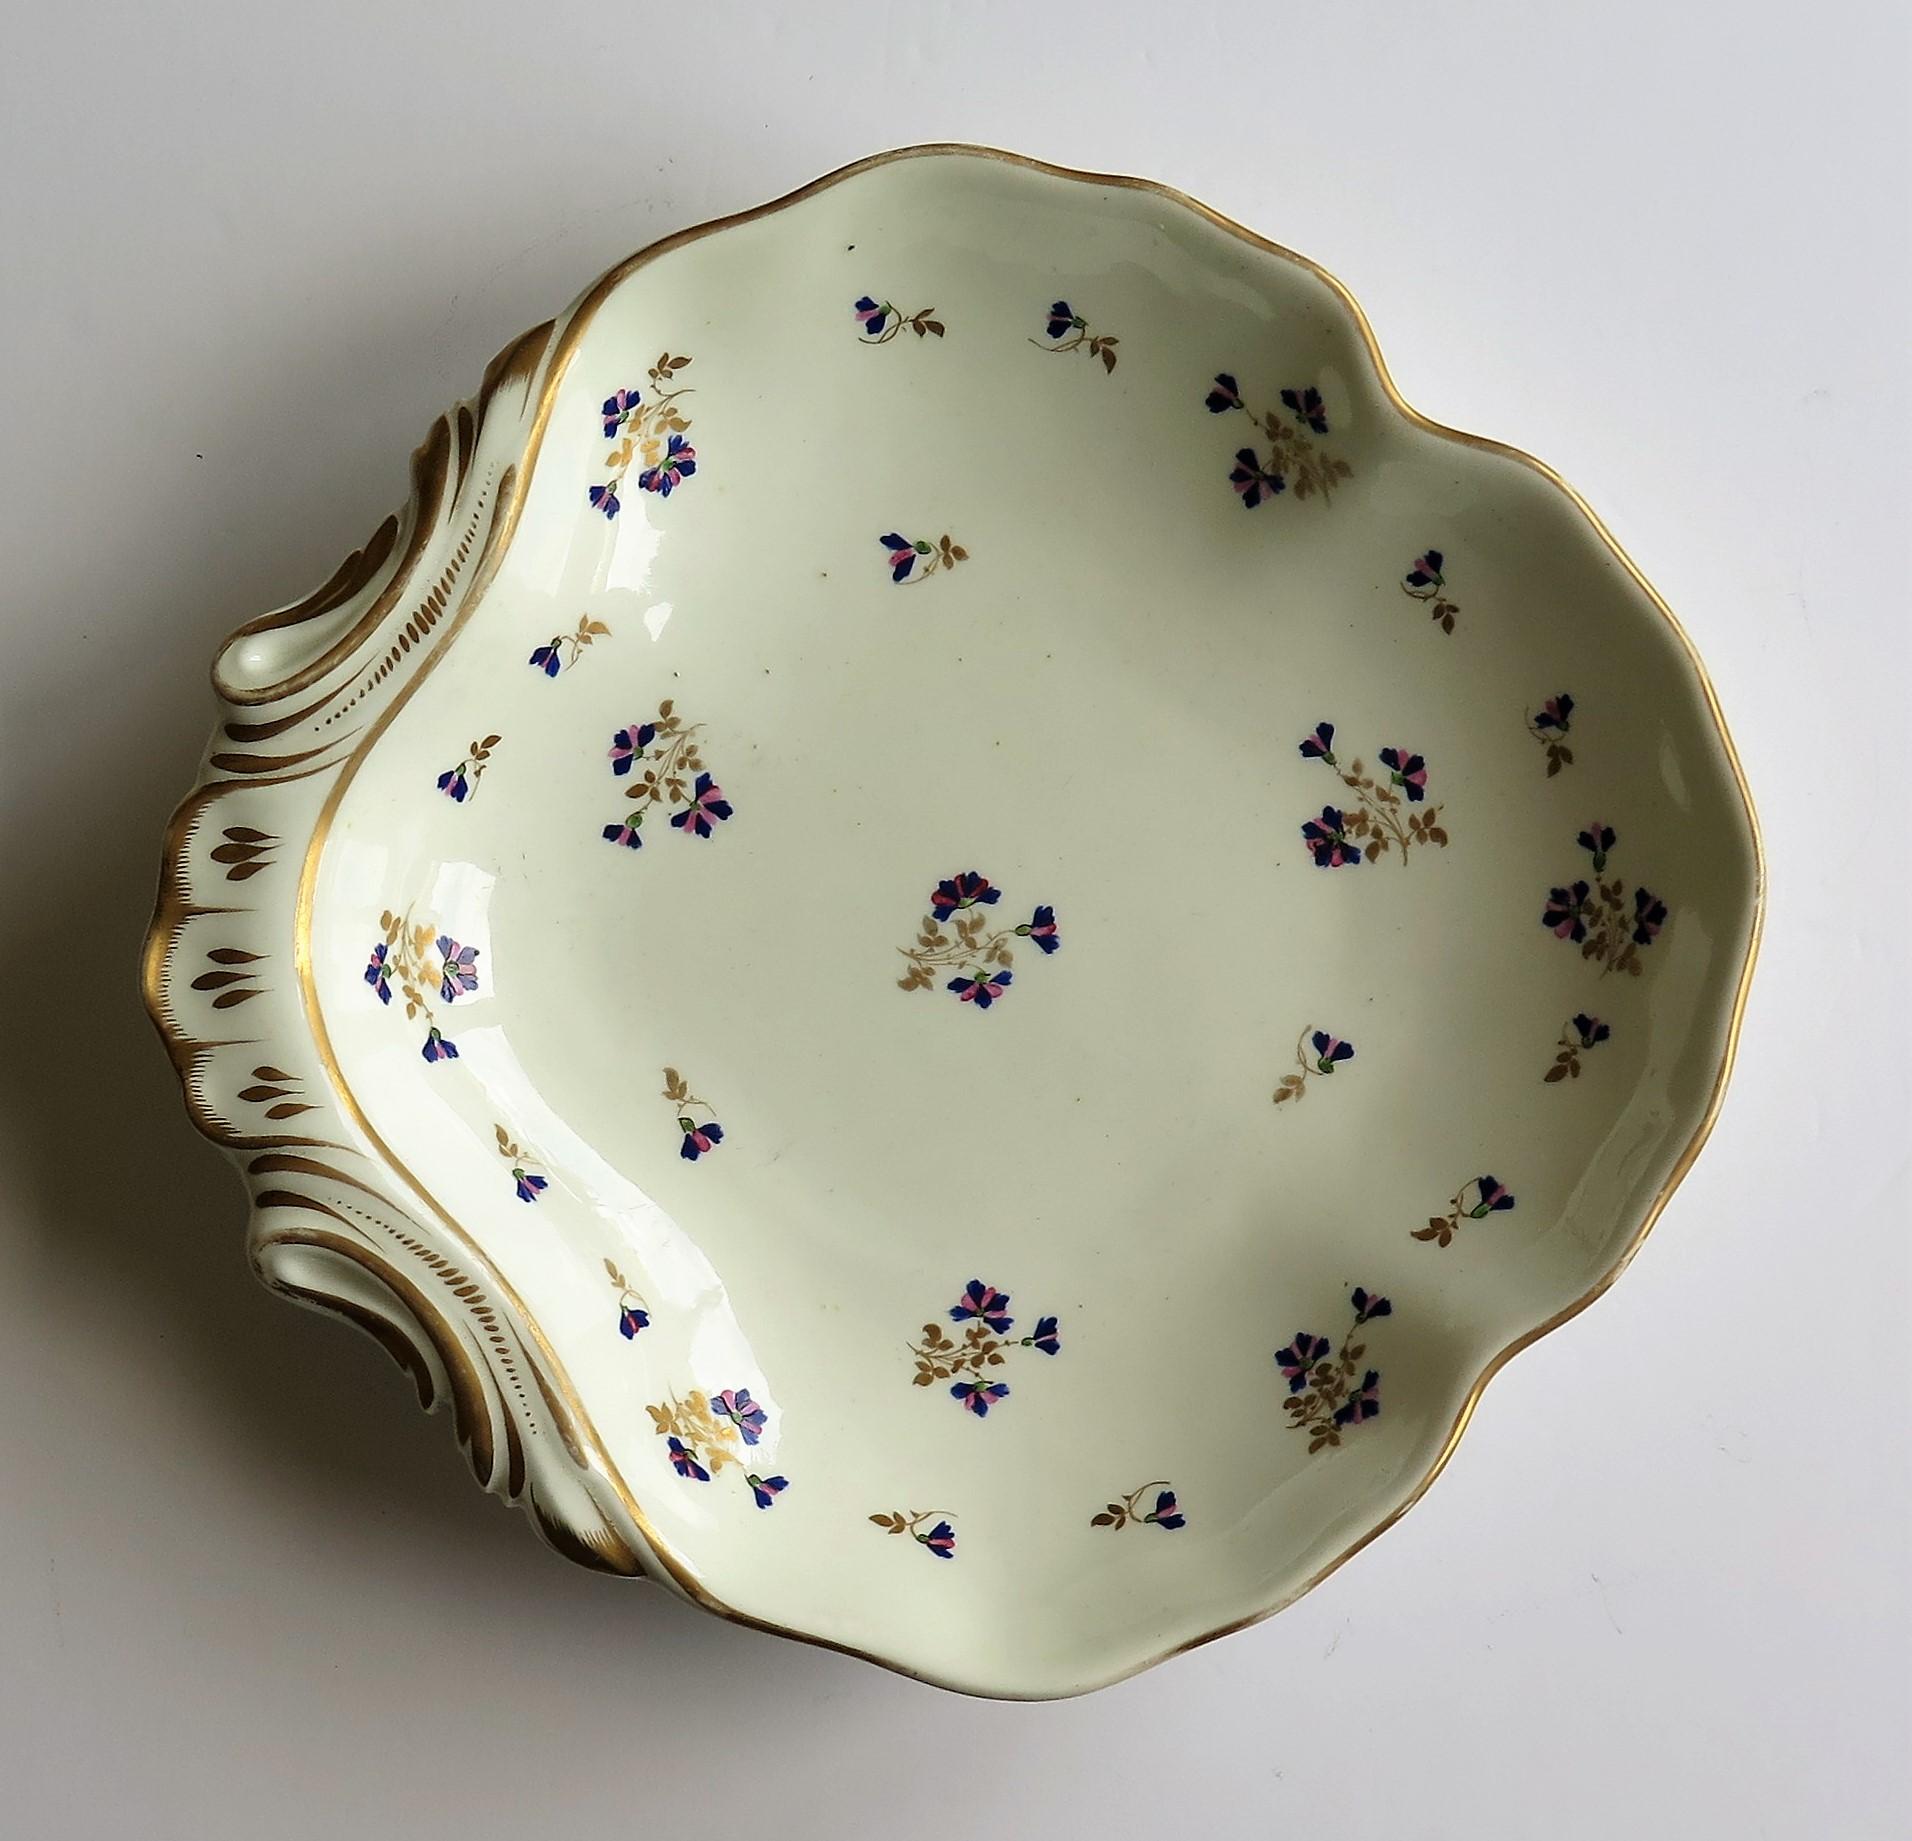 Il s'agit d'un magnifique plat ou d'une assiette à coquille en porcelaine peinte à la main et dorée selon le motif 129, fabriqué par la manufacture de Derby, sous le règne de George 111 au début du XIXe siècle, vers 1810.
 
Les plats en forme de